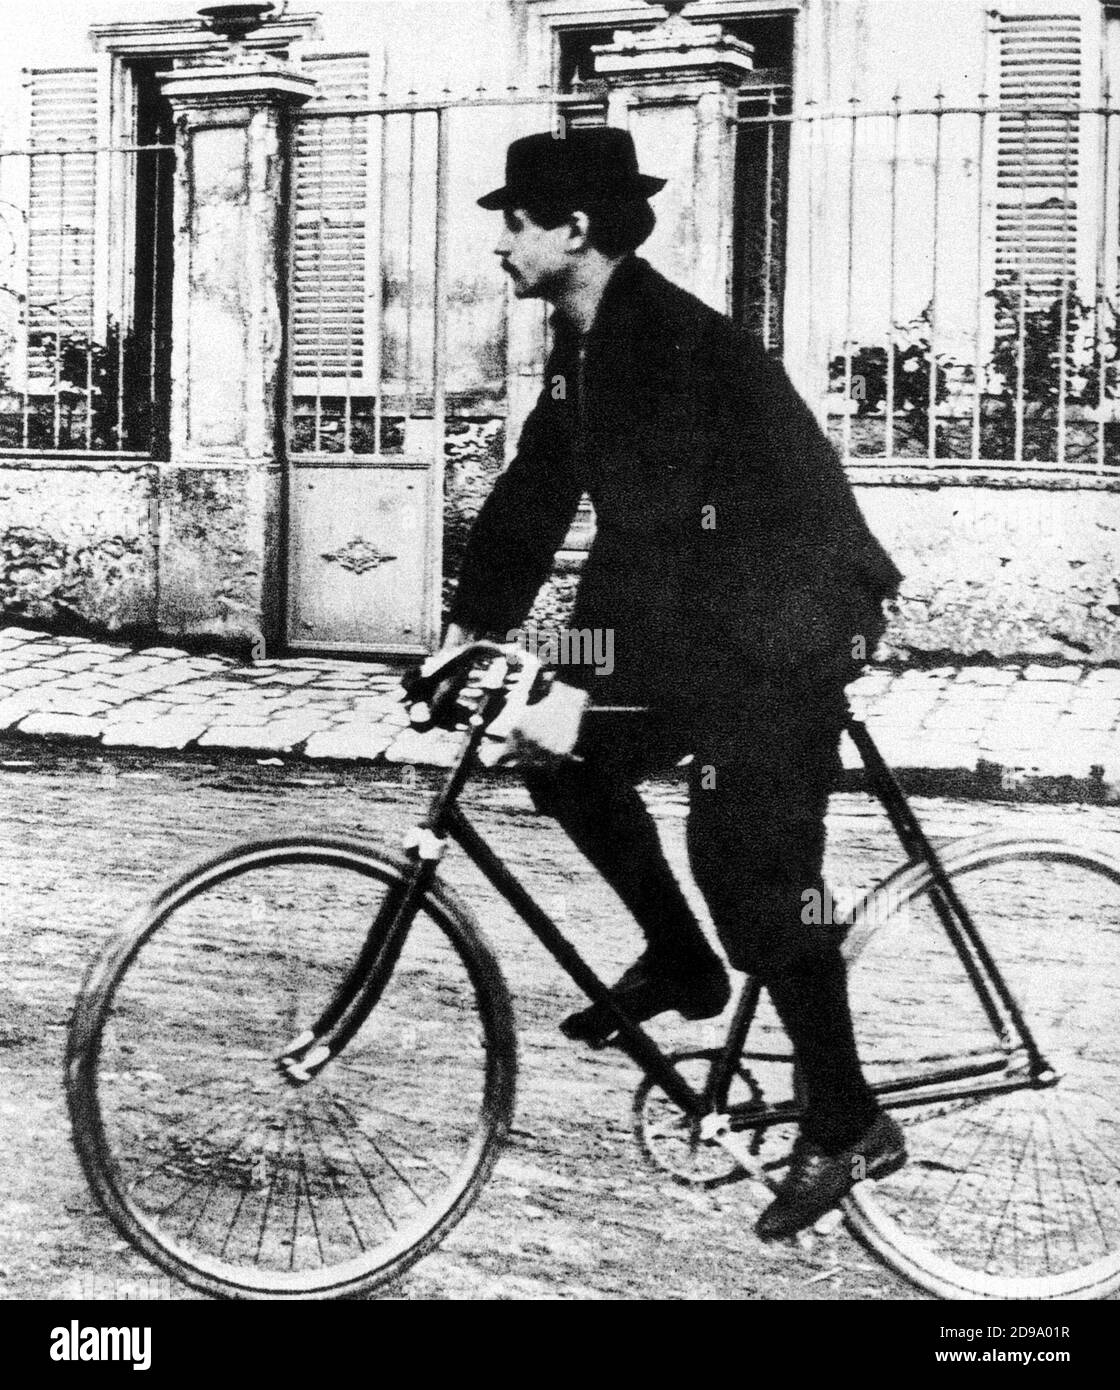 Lo scrittore francese ALFRED JARRY ( 1873 - 1907 ) lascia la sua casa a Corbeil per Parigi. Amava la bicicletta , ammirando il modo in cui fondeva l'uomo e la macchina . Creatore del teatro giocare UBU ROI ( 1896 ) - belle Epoque - anarchico - anarchia - bicicletta - bike - bicicletta - alcolizzato - alcolismo - alcolismo - SURREALISMO - cappello - baffi - baffi - SCRITTORE - COMMEDIOGRAFO - commedia-scrittore - drammaturista - PLYWRITER - LETTERATURA - LETTERATURA - LETTERATURA - LETTERATURA - LETTERATURA poeta maledetto - maudit ---- Archivio GBB Foto Stock